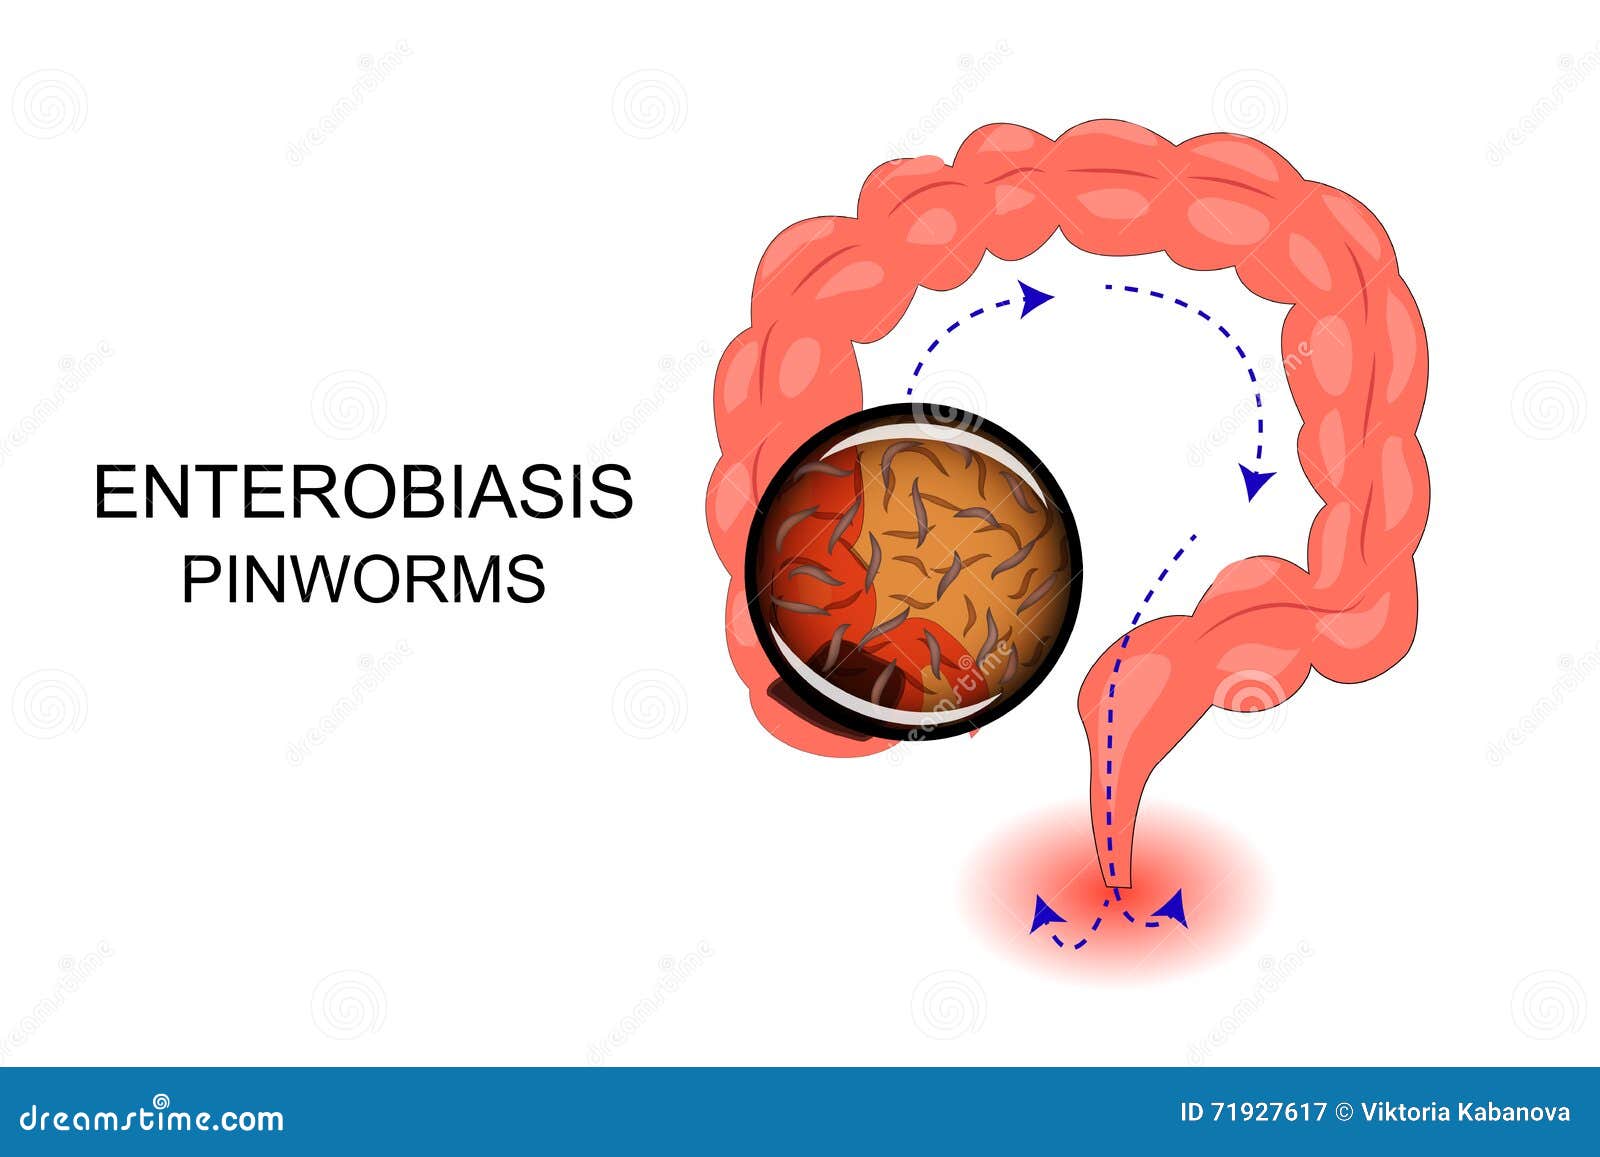 mi a veszélyes enterobiosis